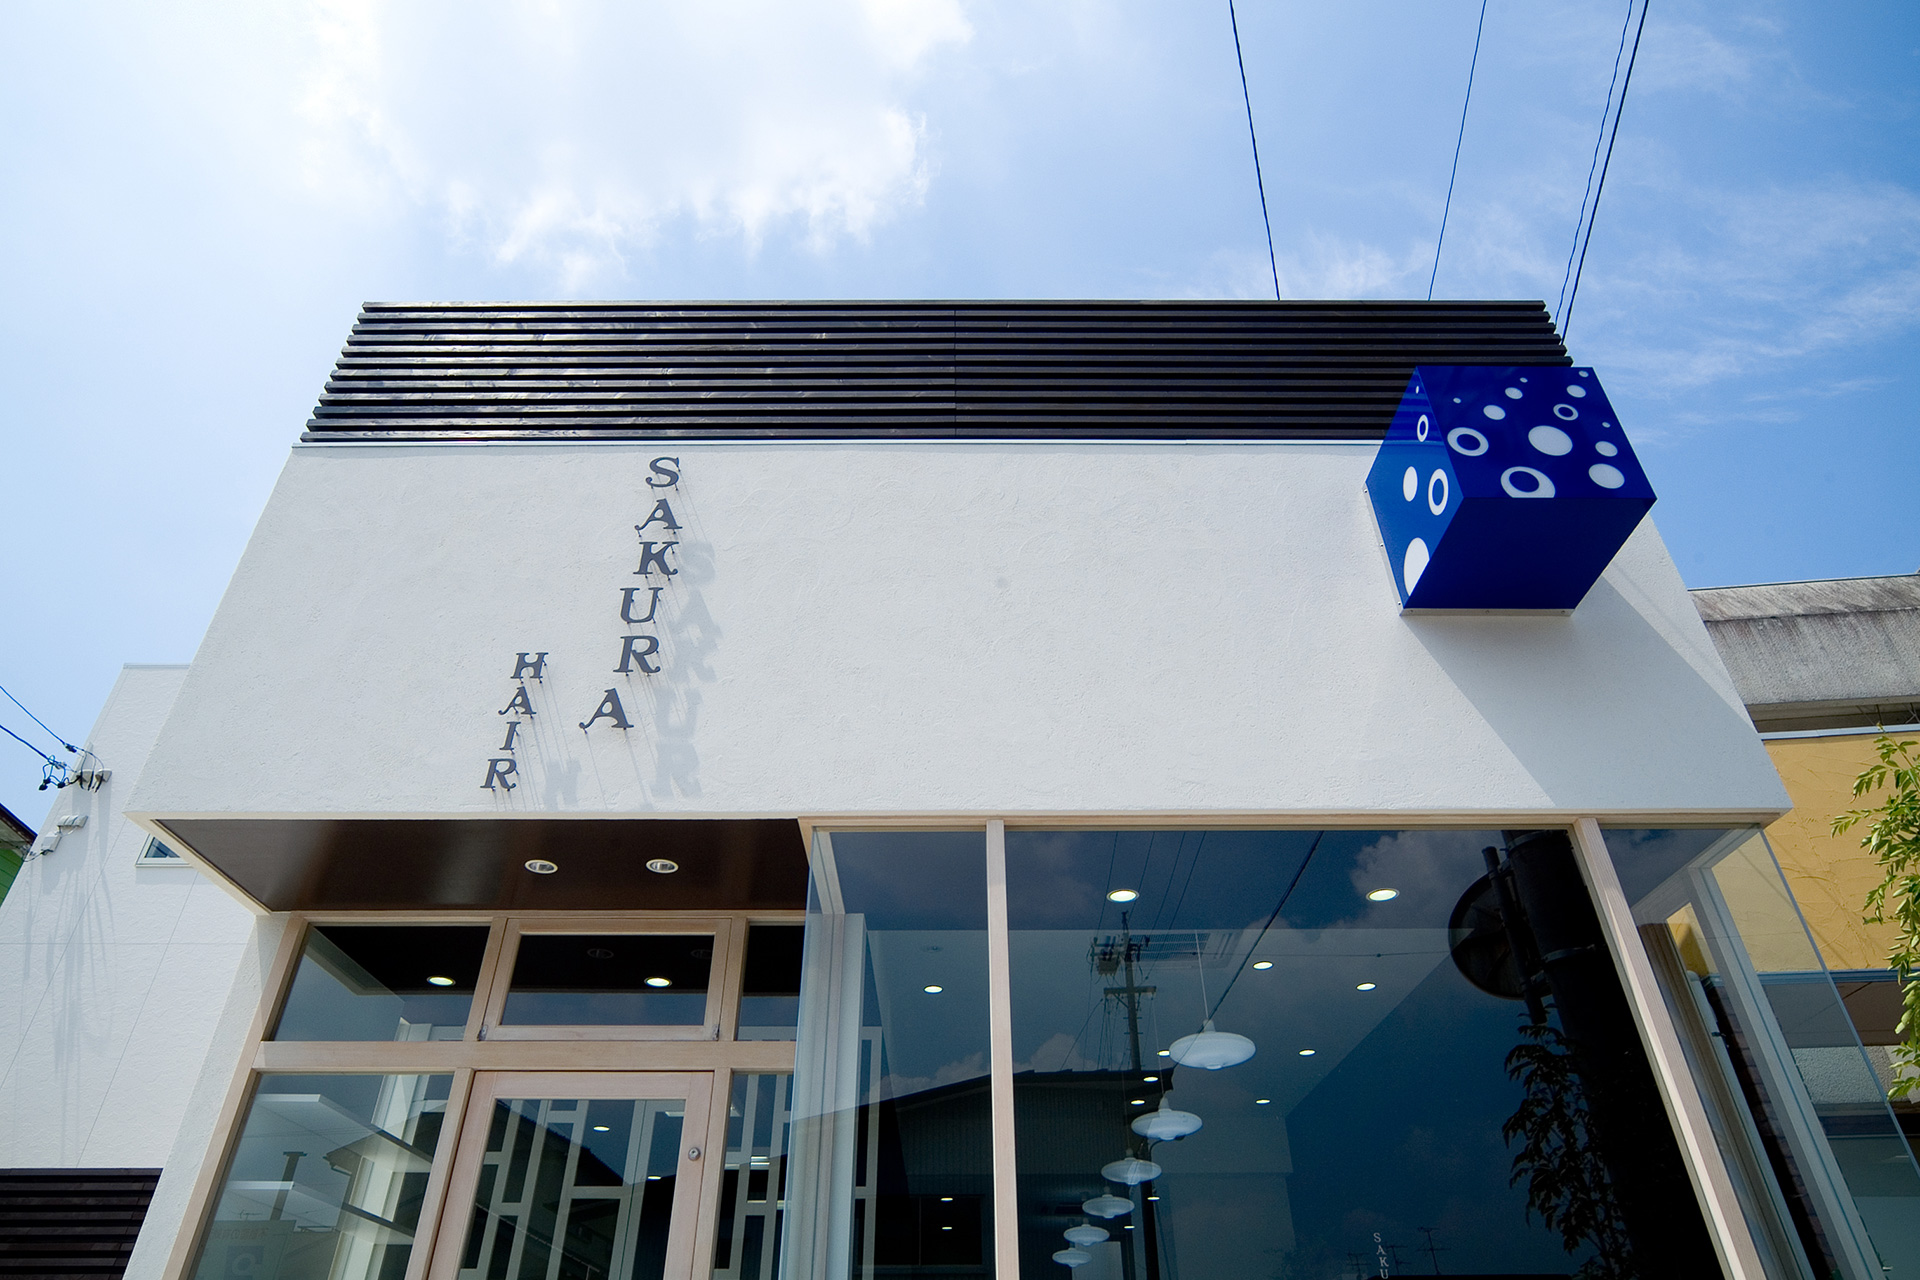 “店舗付き住宅のデザイン設計なら愛知県名古屋のスーパーボギープランニング”